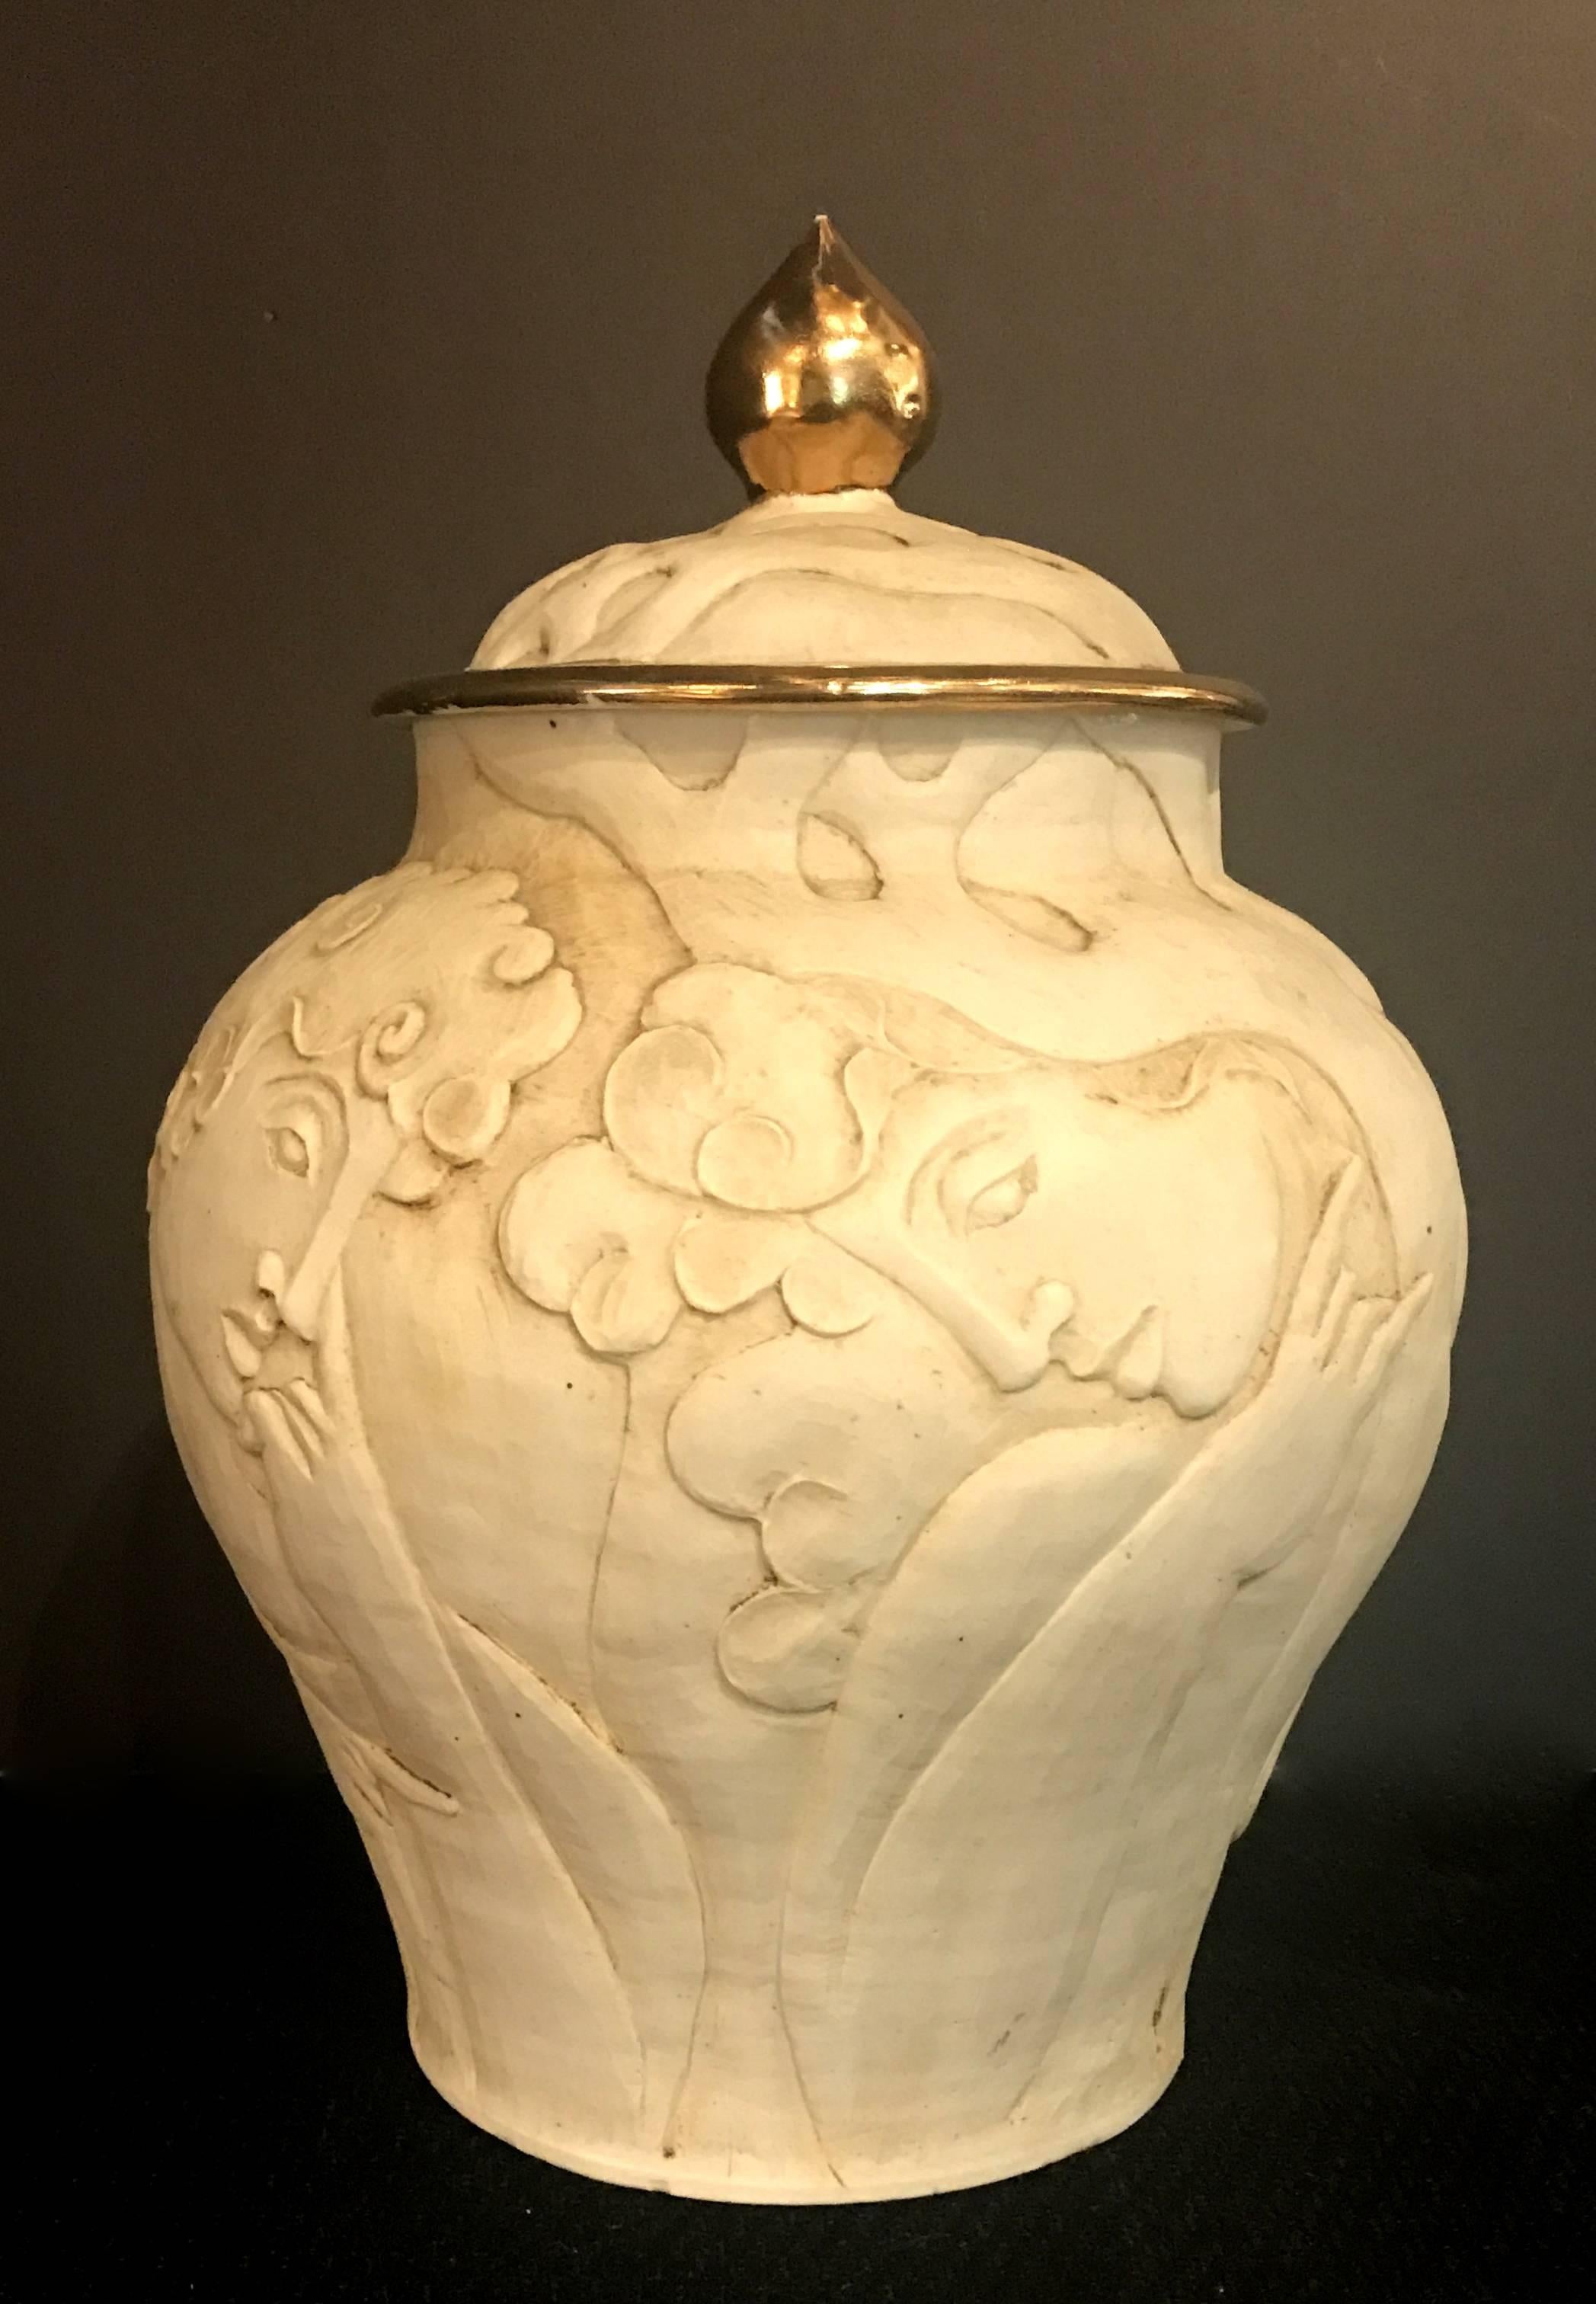 Unique urne Art Déco composée de bustes masculins sculptés, de vignes et de fleurs en biscuit de porcelaine. Le couvercle est garni d'or. L'urne est en excellent état d'origine.